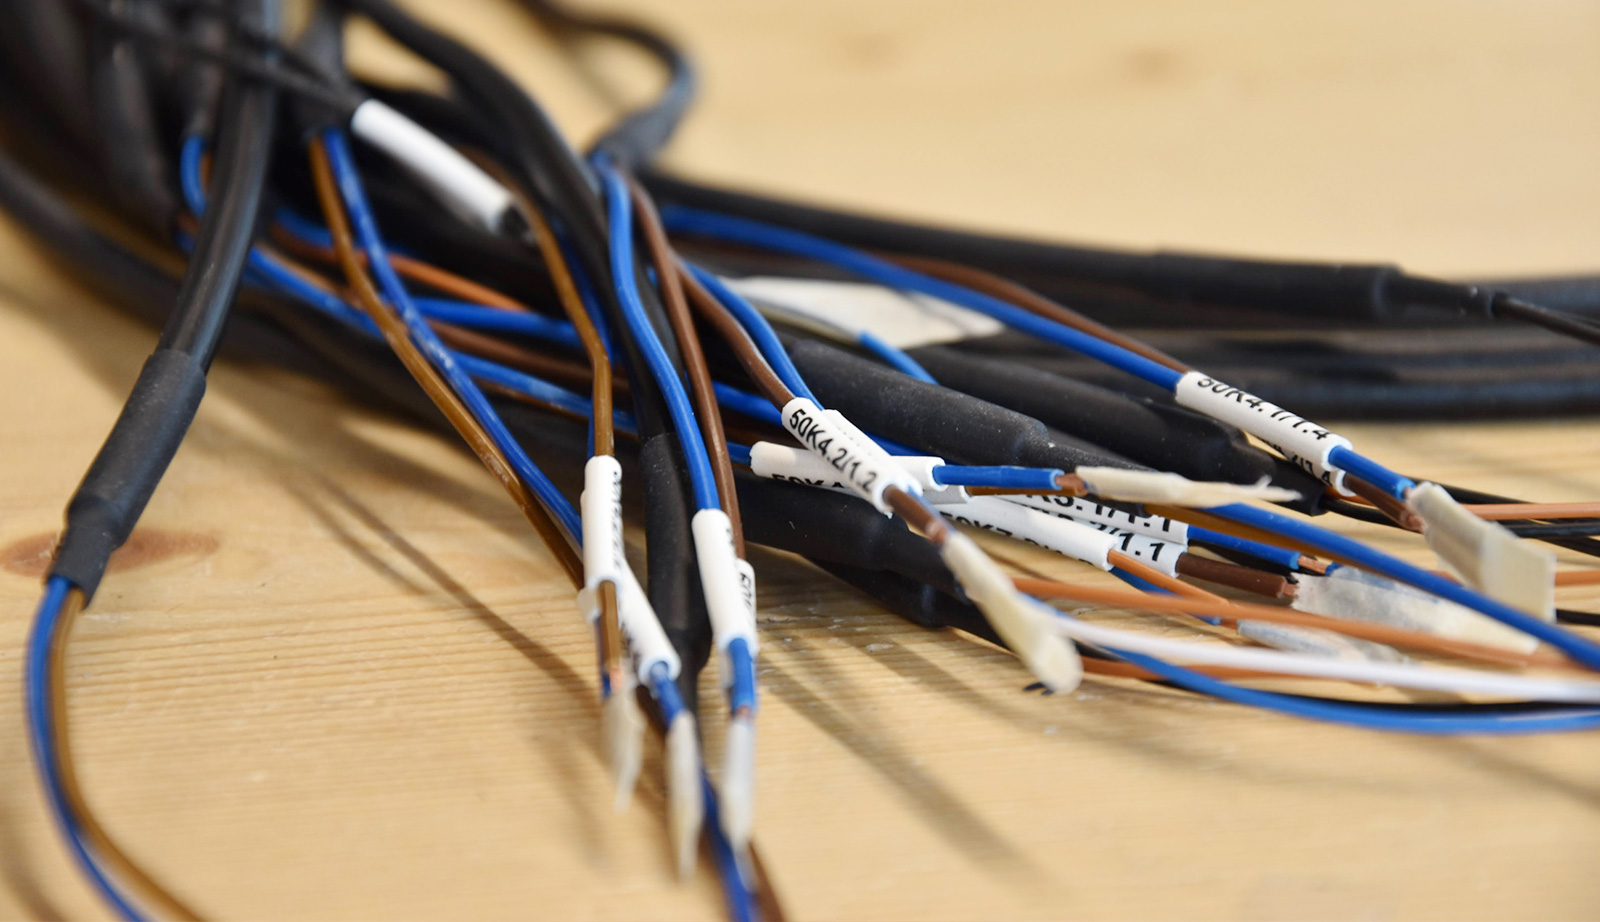 kabelkonfetion kabelbearbeitung sensorkabel verdrahtung kabelbeschriftung litzenbeschriftung abisolieren zugkraftmessung crimpen